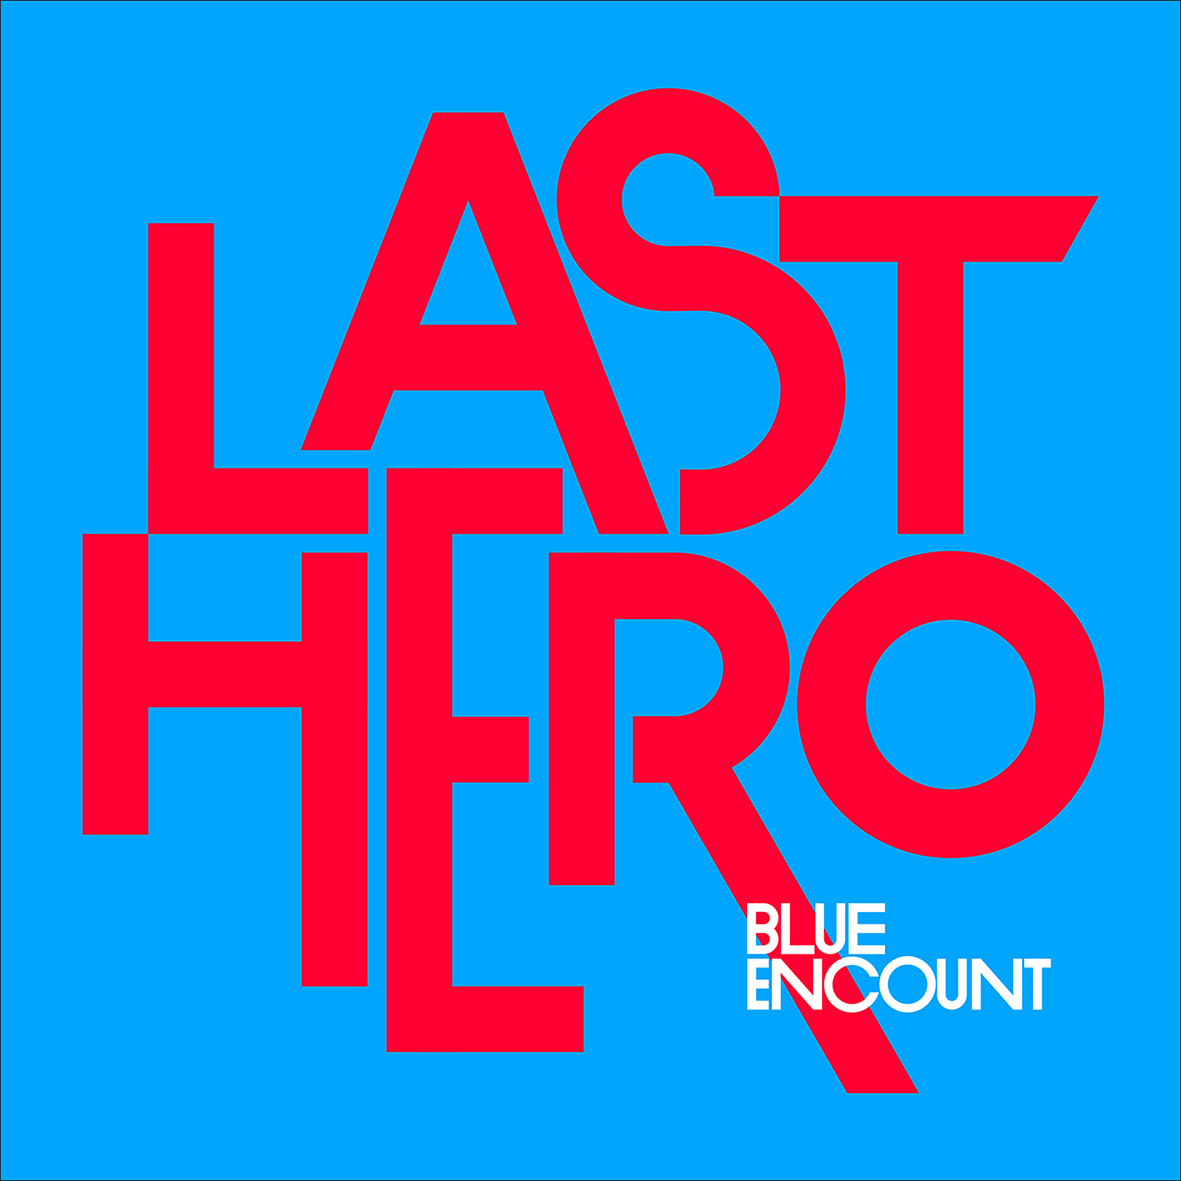 BLUE ENCOUNT/「LAST HERO - 通常盤」